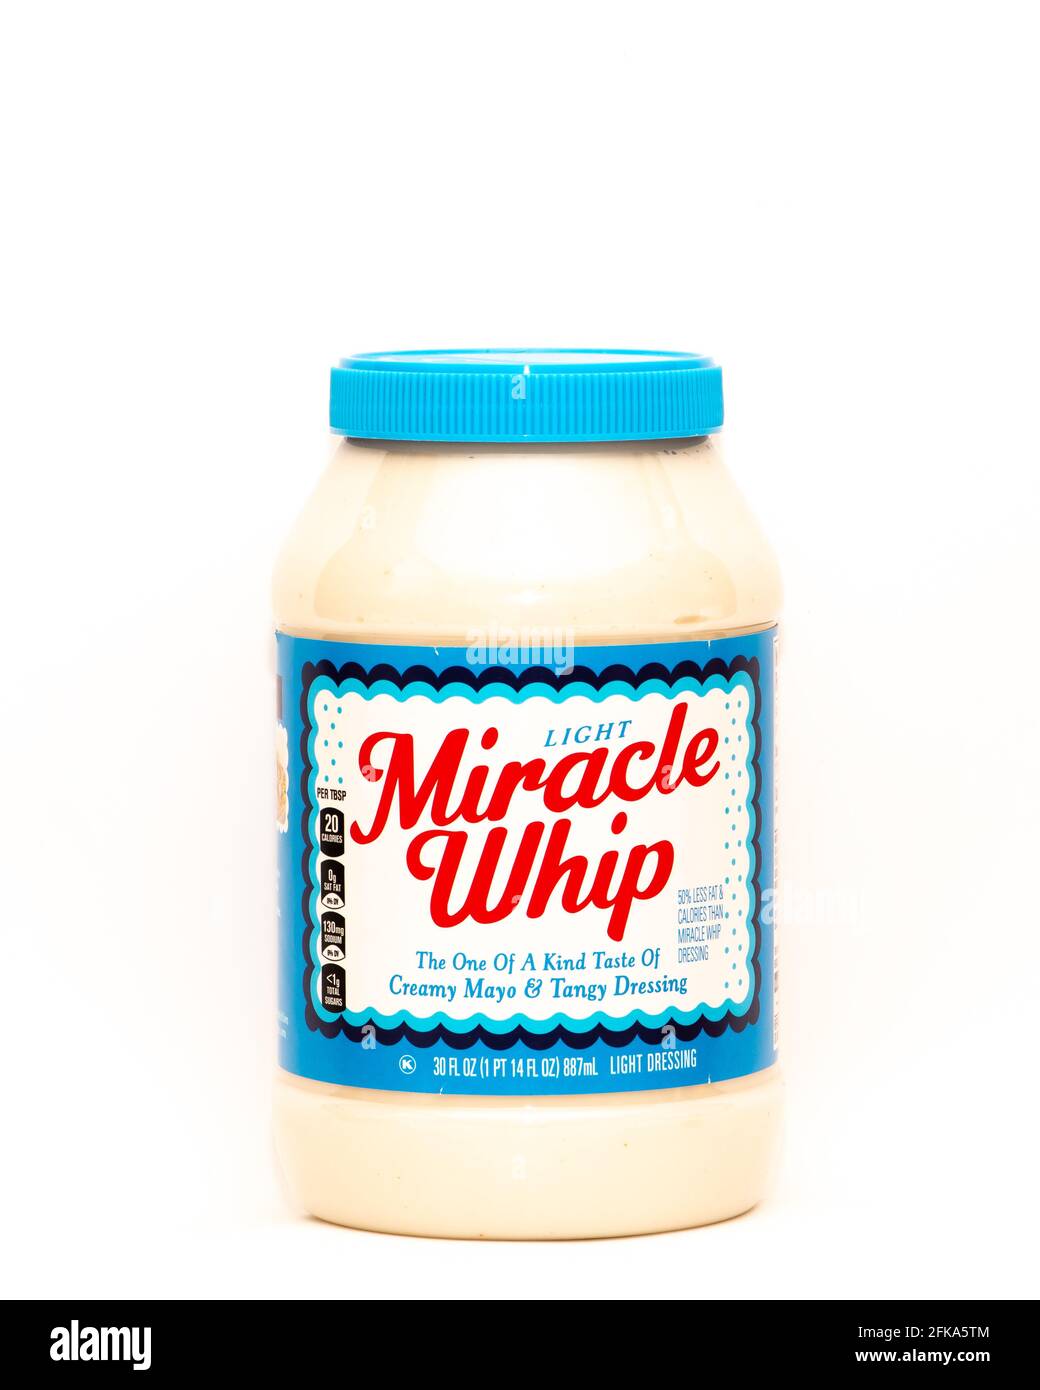 Un grande vasetto di leggero Miracle Whip, l'unico nel suo genere di cremoso Mayo & Tangy Dressing, perfetto per insalate e panini. Foto Stock